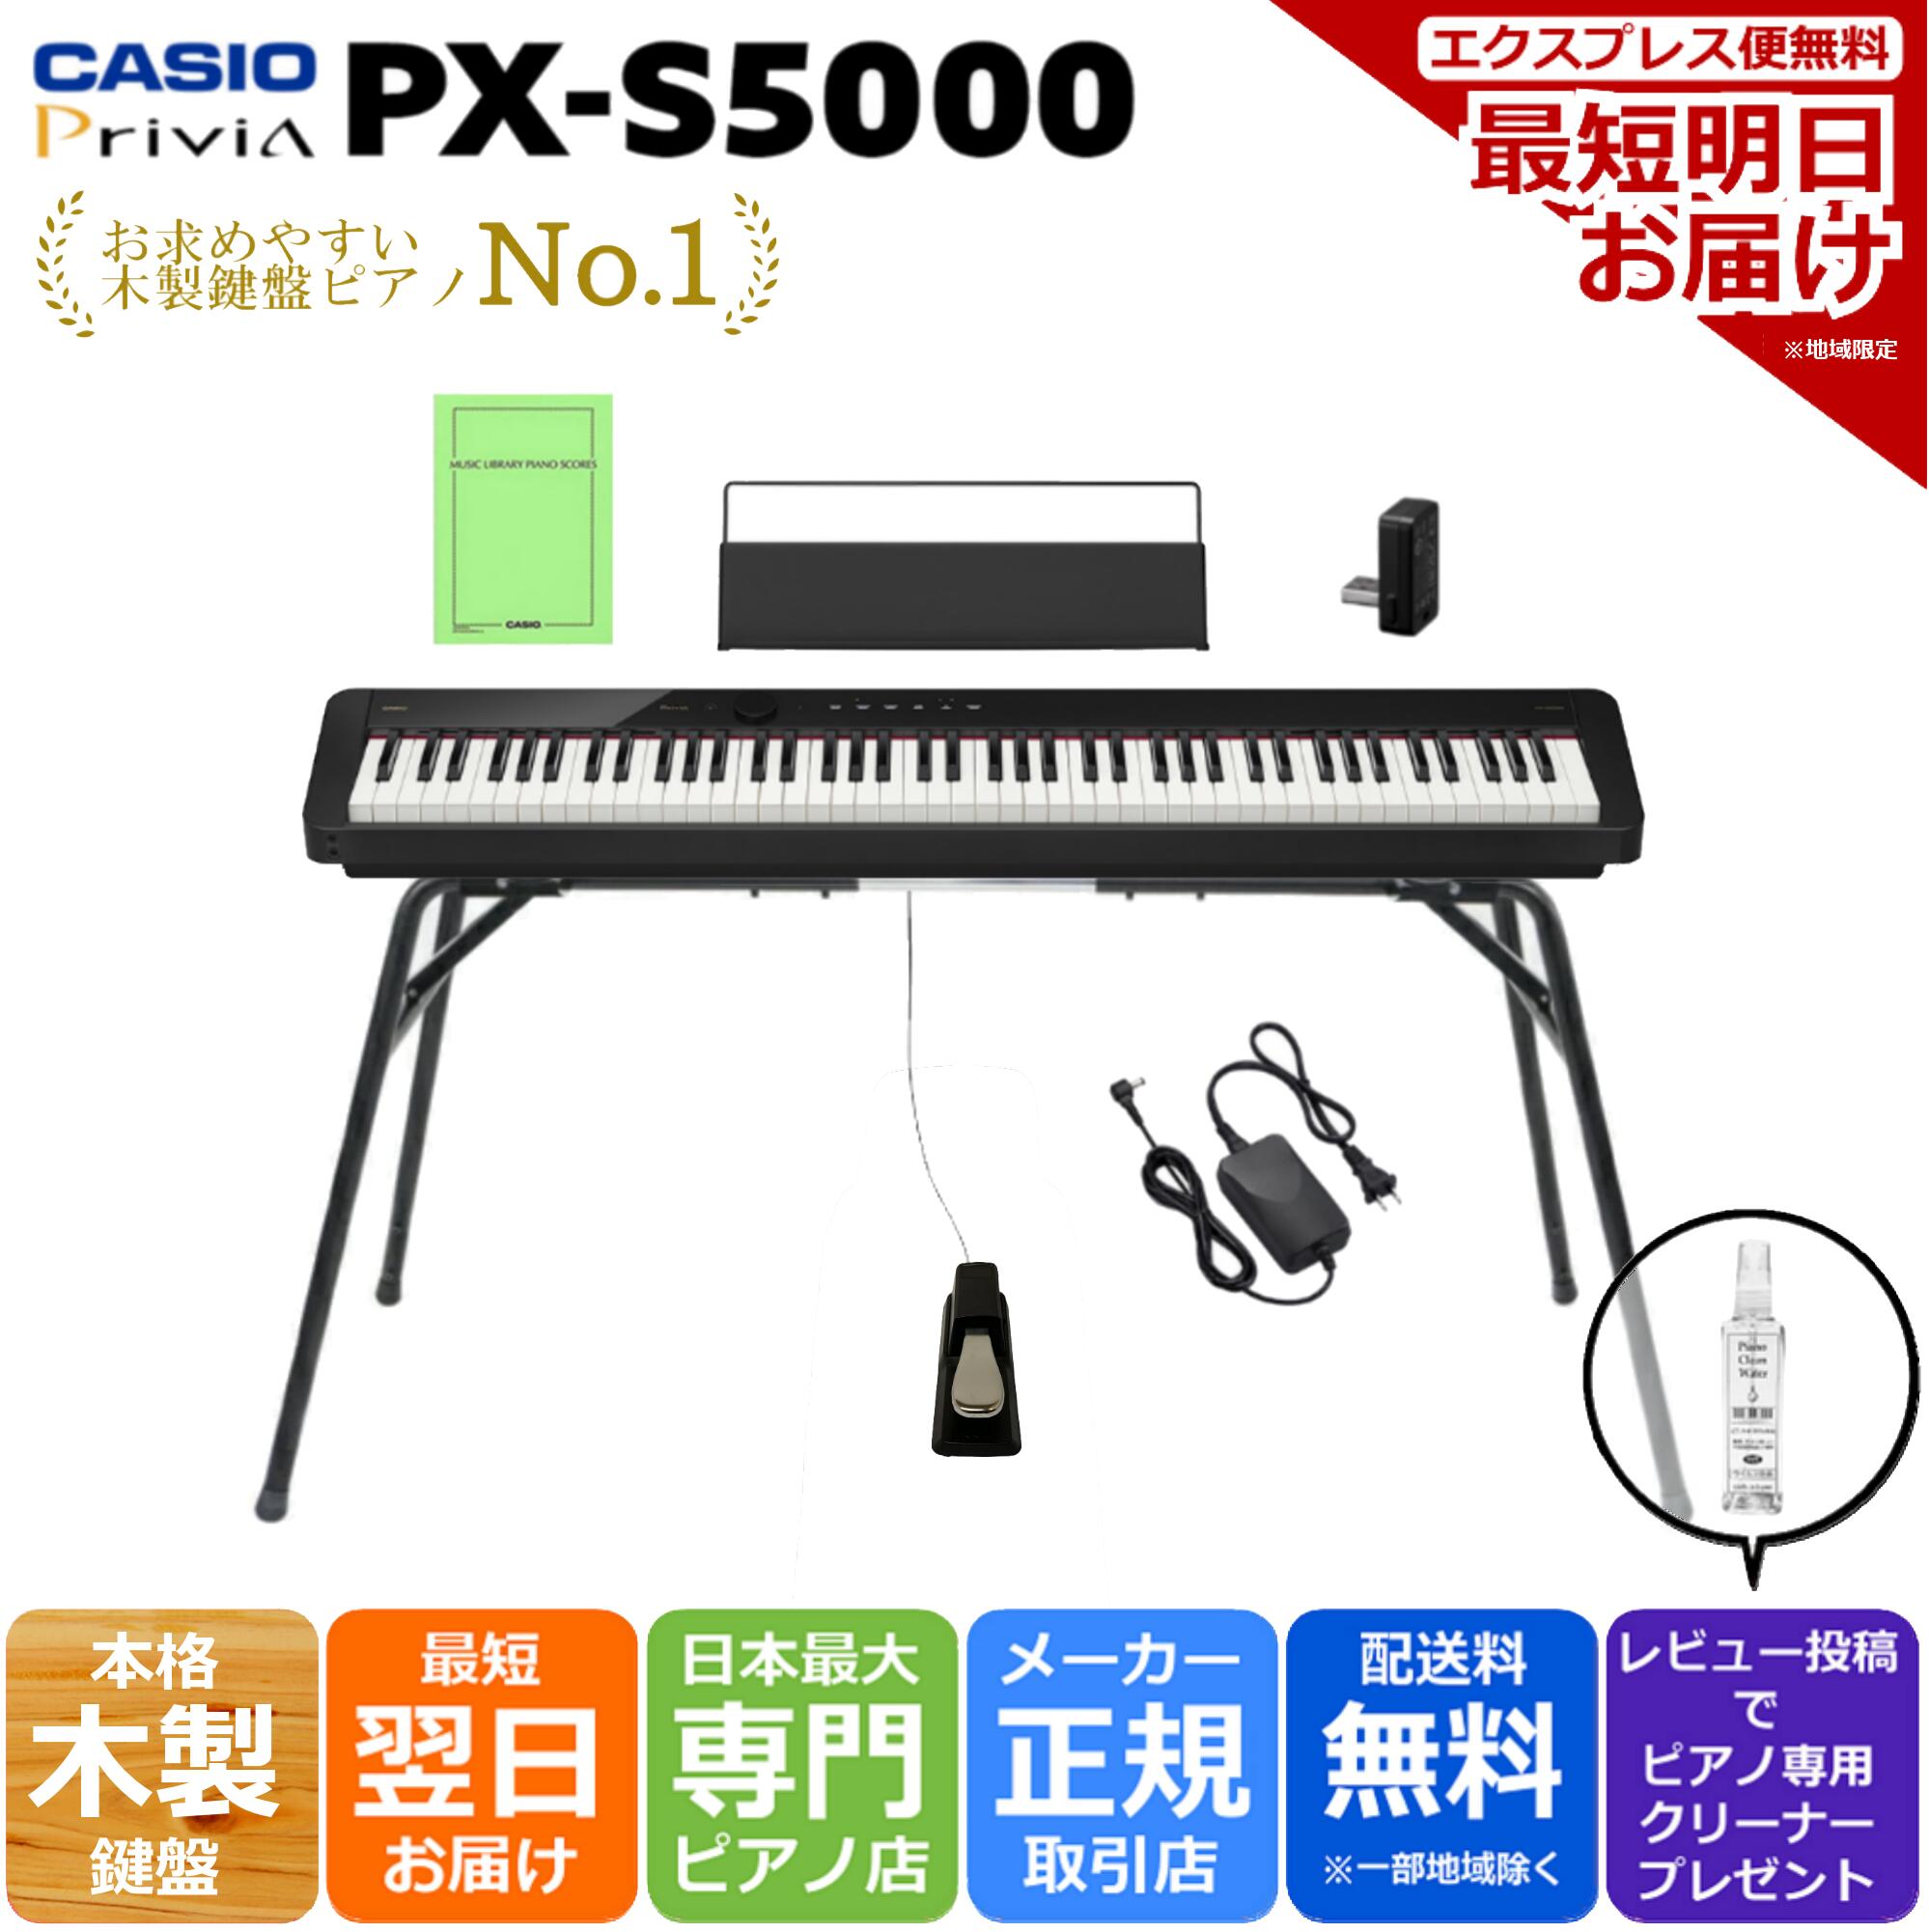 CASIO カシオ Privia プリヴィア 電子ピアノ 88鍵盤 スマートハイブリッドハンマーアクション PX-S5000 BK ブラック